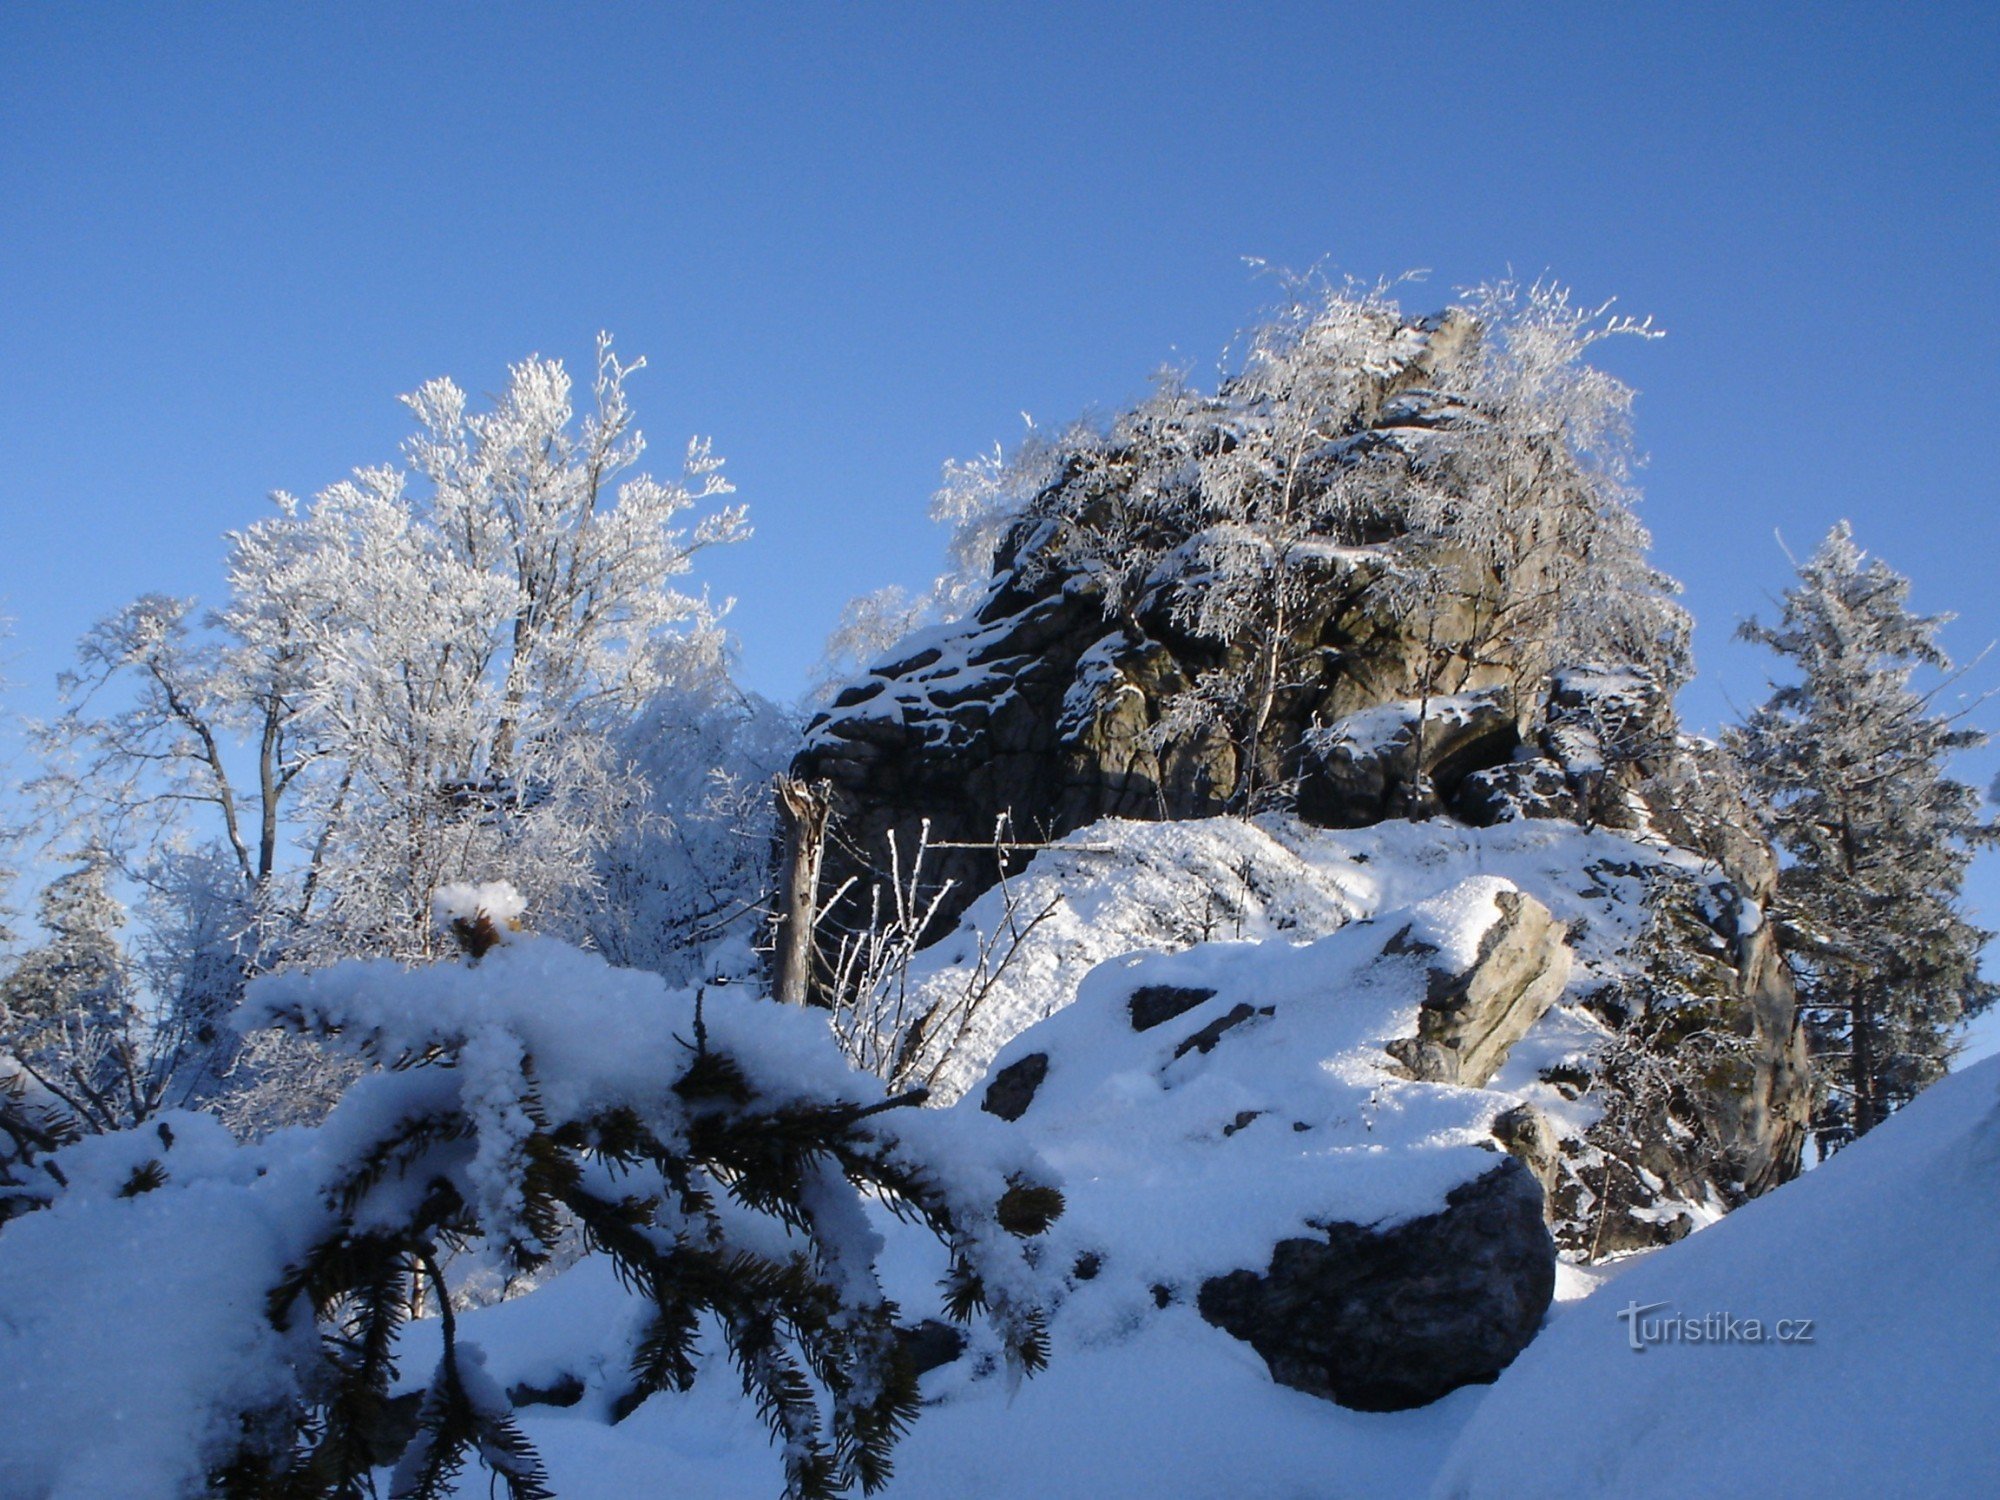 Malinska-Felsen im Winter